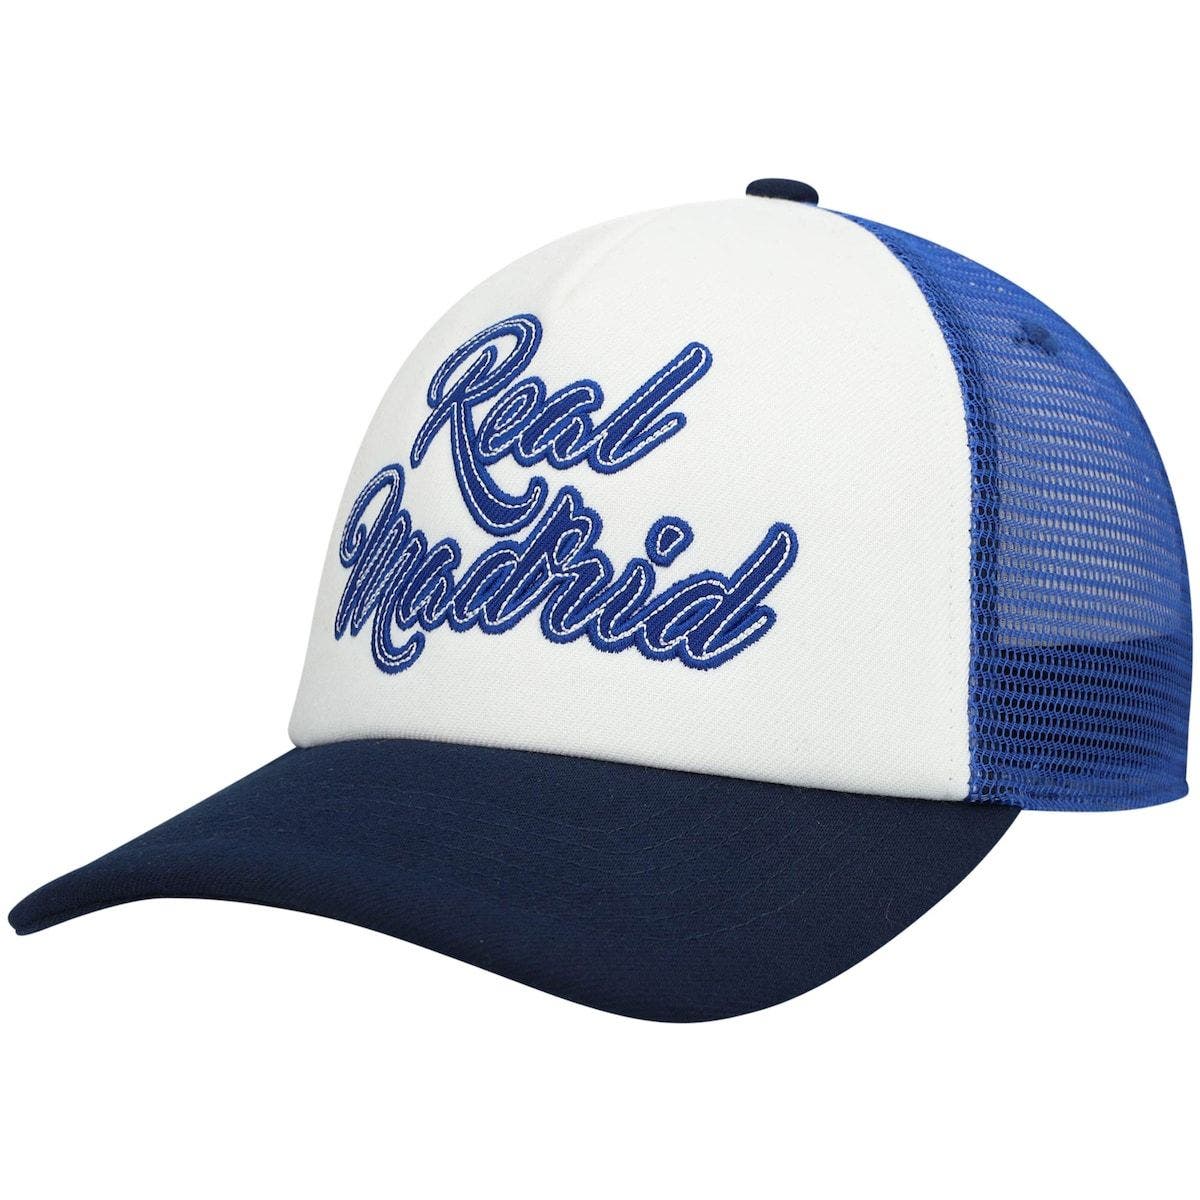 Fan Ink Real Madrid Rave Bucket hat/Cap Blue 